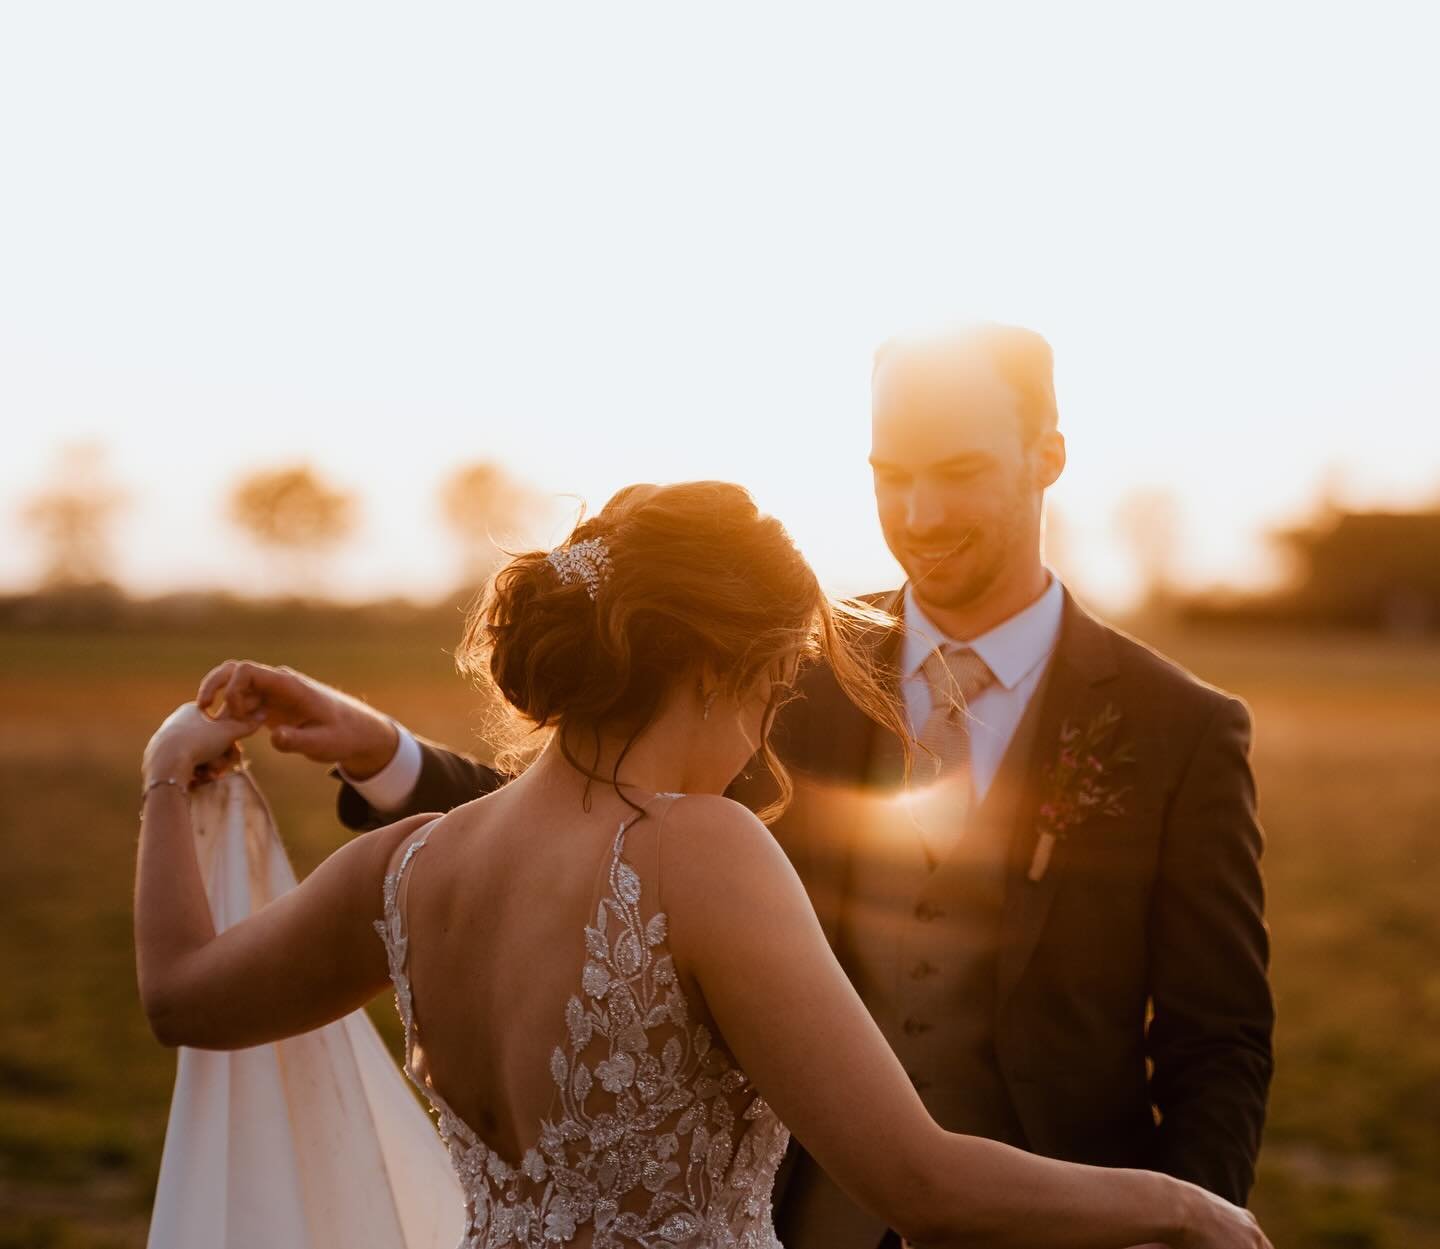 This 𝑮𝑶𝑳𝑫𝑬𝑵𝑯𝑶𝑼𝑹!🌅💛☀️

Tijdens onze shoots focussen we op het vastleggen van jullie meest spontane momenten, waarbij we jullie vooral samen laten genieten en interactie hebben. ✨📸 

#luxvisualstorytellers #spontaan #liefde #weddingphotogr